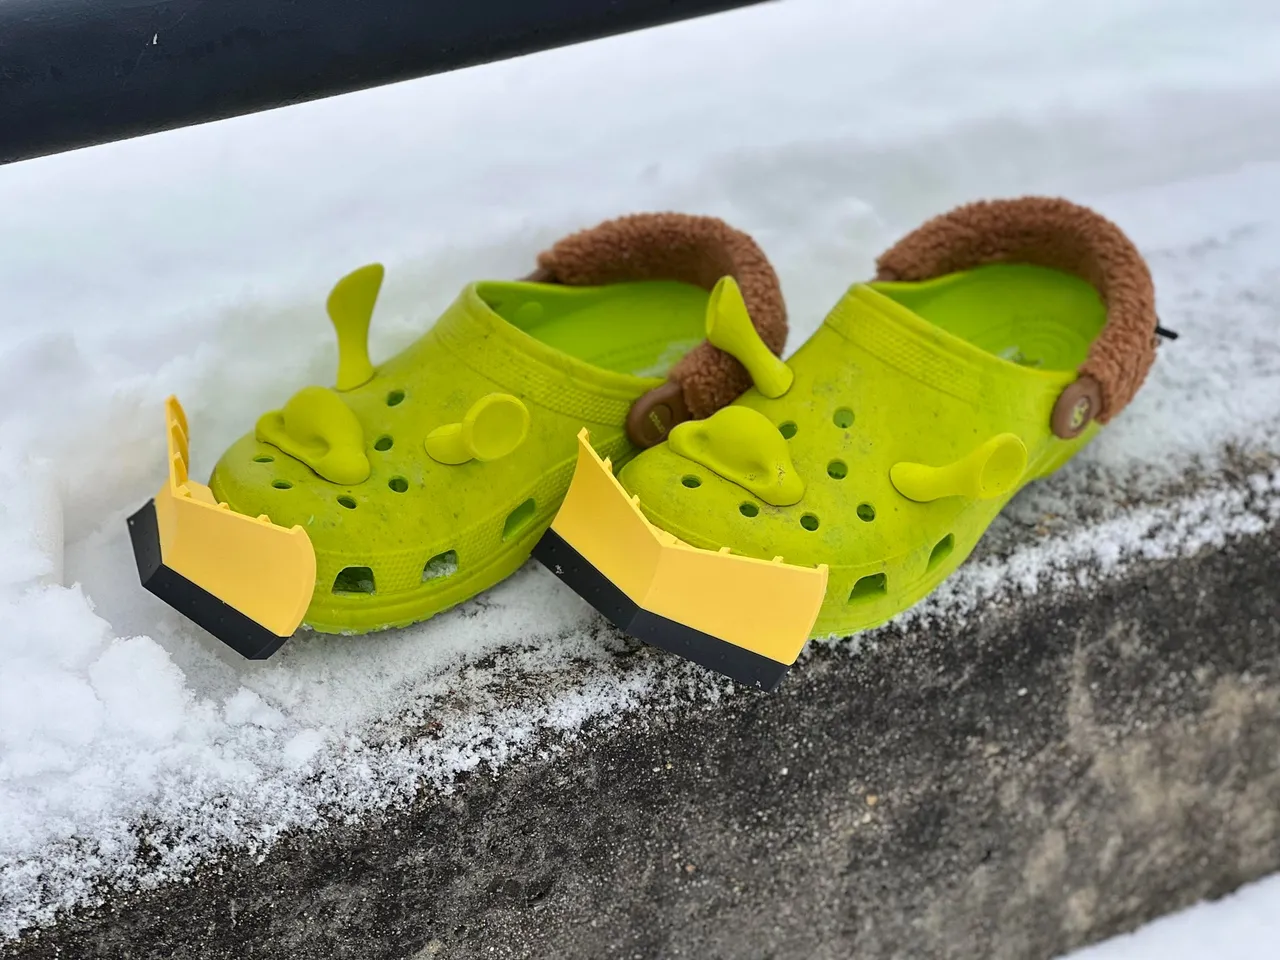 Snow Plow Crocs